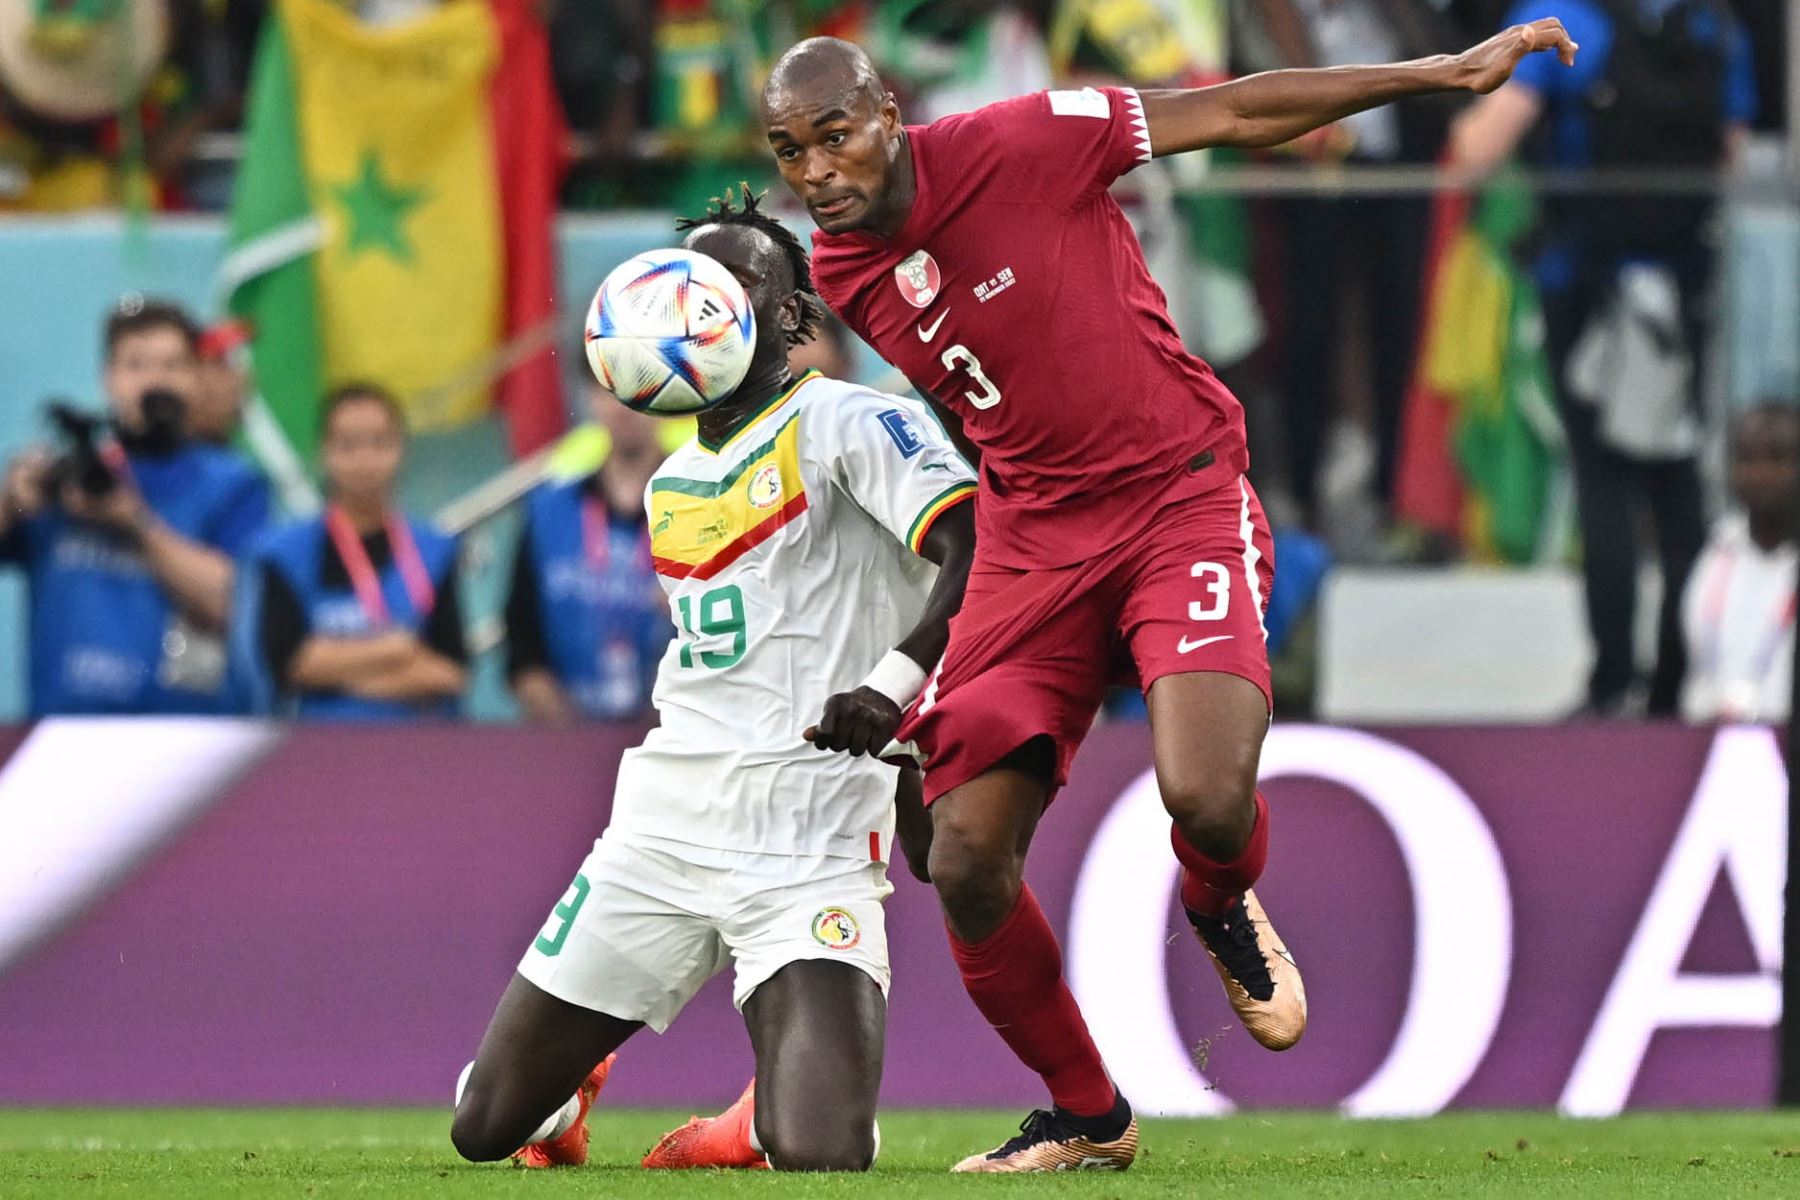 Abdelkarim Hassan de Catar en acción contra Famara Diedhiou de Sengal durante el partido de fútbol del grupo A de la Copa Mundial de la FIFA 2022 entre Catar y Senegal en el Estadio Al Thumama en Doha, Catar. Foto: EFE